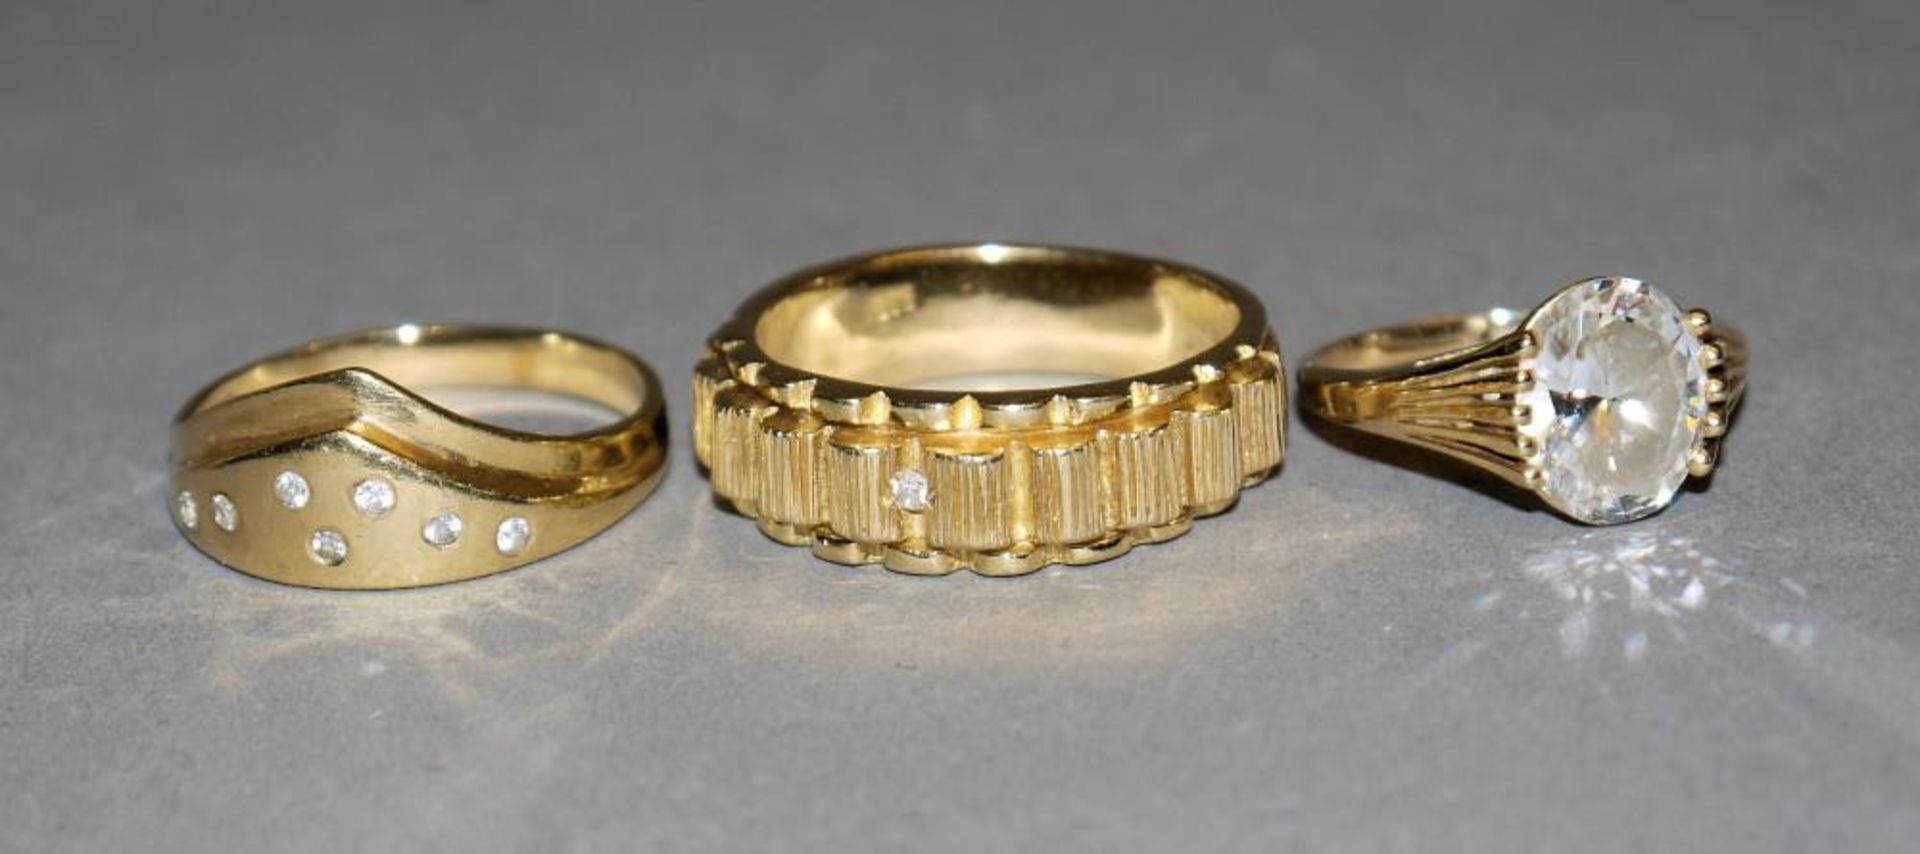 Drei Ringe mit weißen Steinen (Saphiren?), Gold 14kt Gelbgold, besetzt mit weißem Stein, weißer